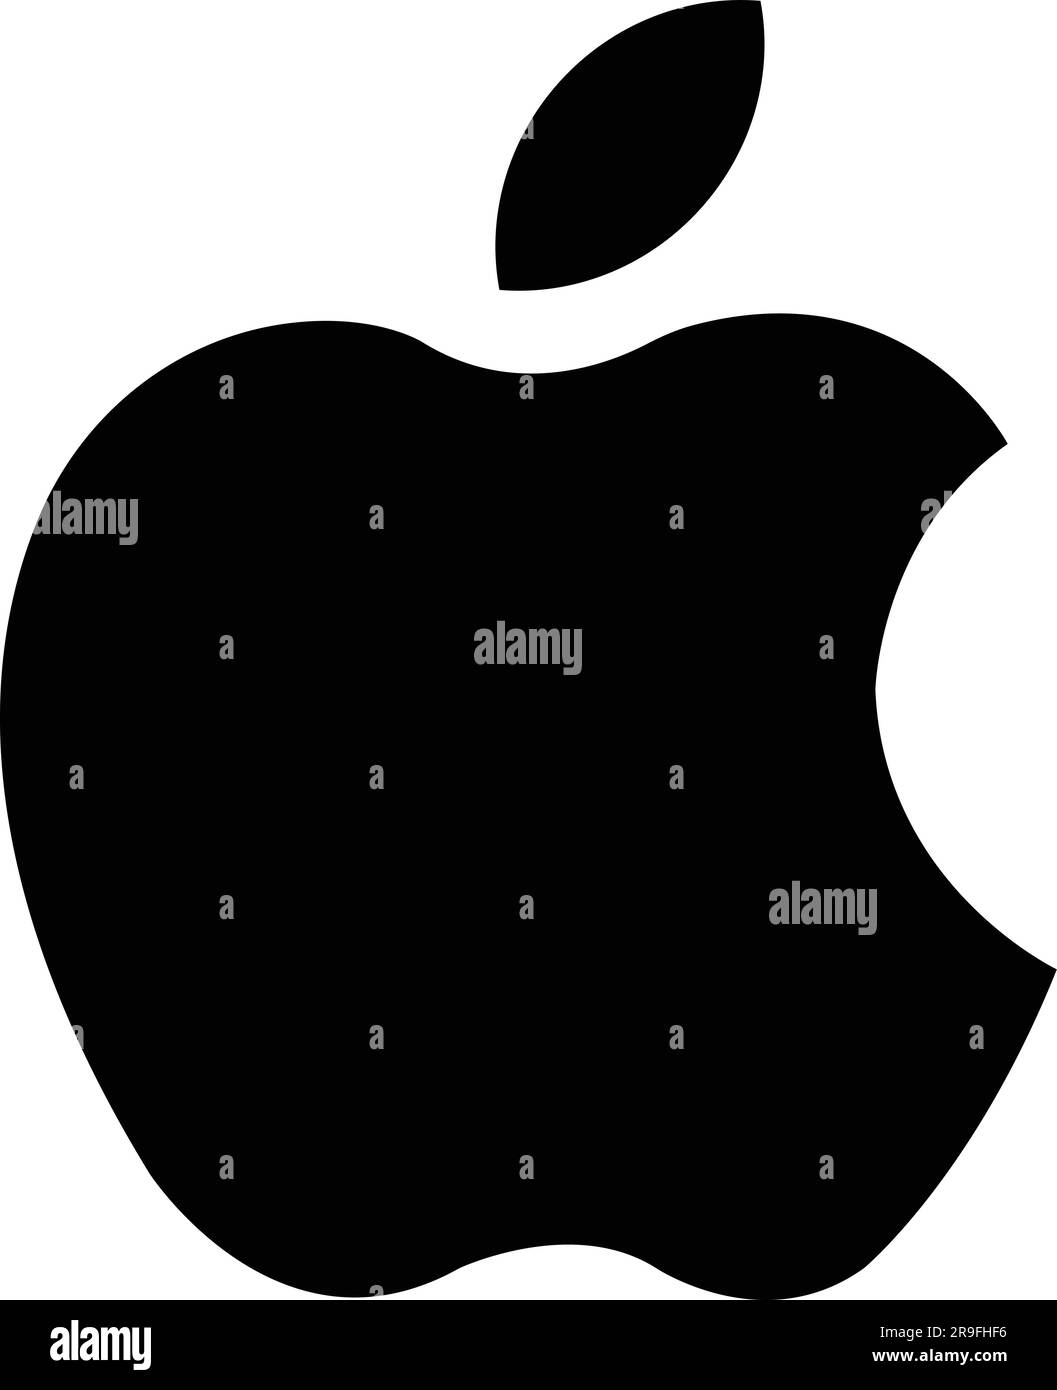 apple logo white on black